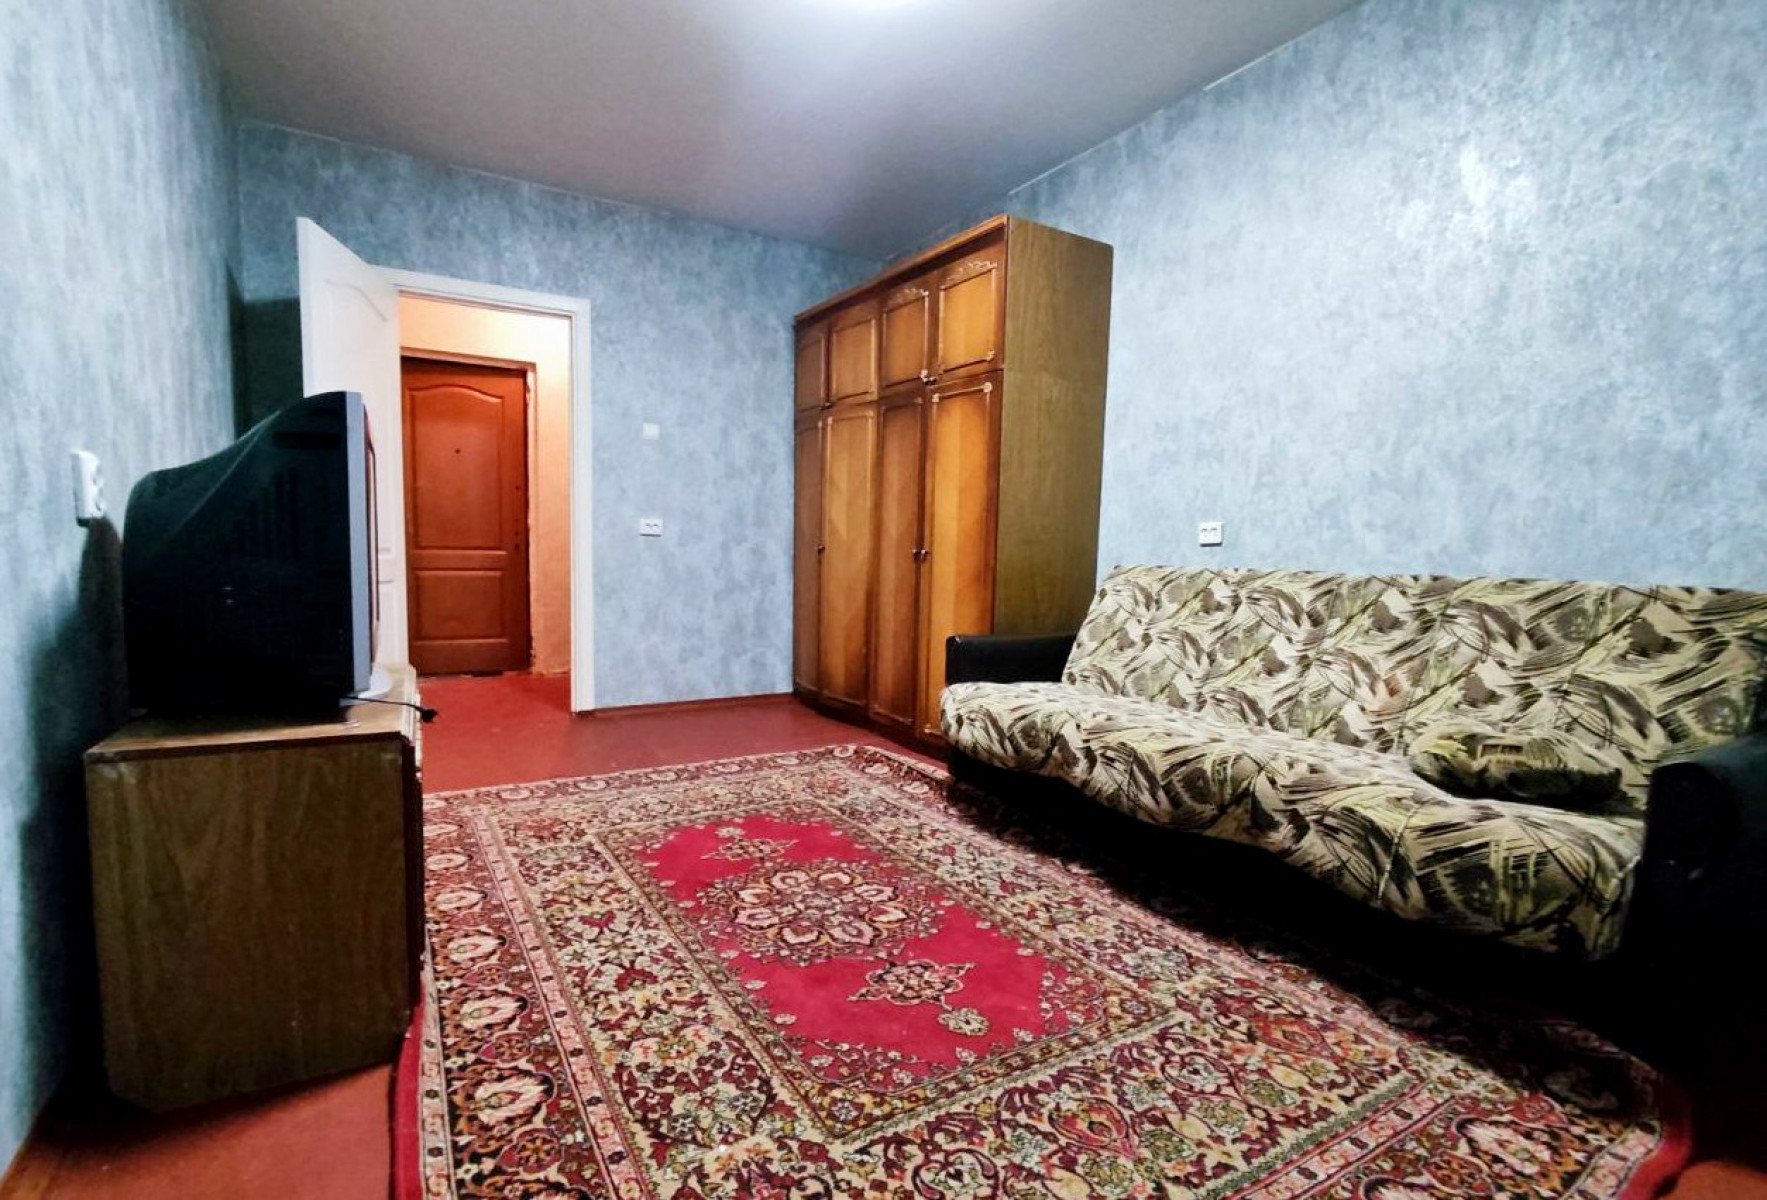 1 комнатная квартира 40 м2 на 4 этаже в жилом состоянии, ул. Пухова.